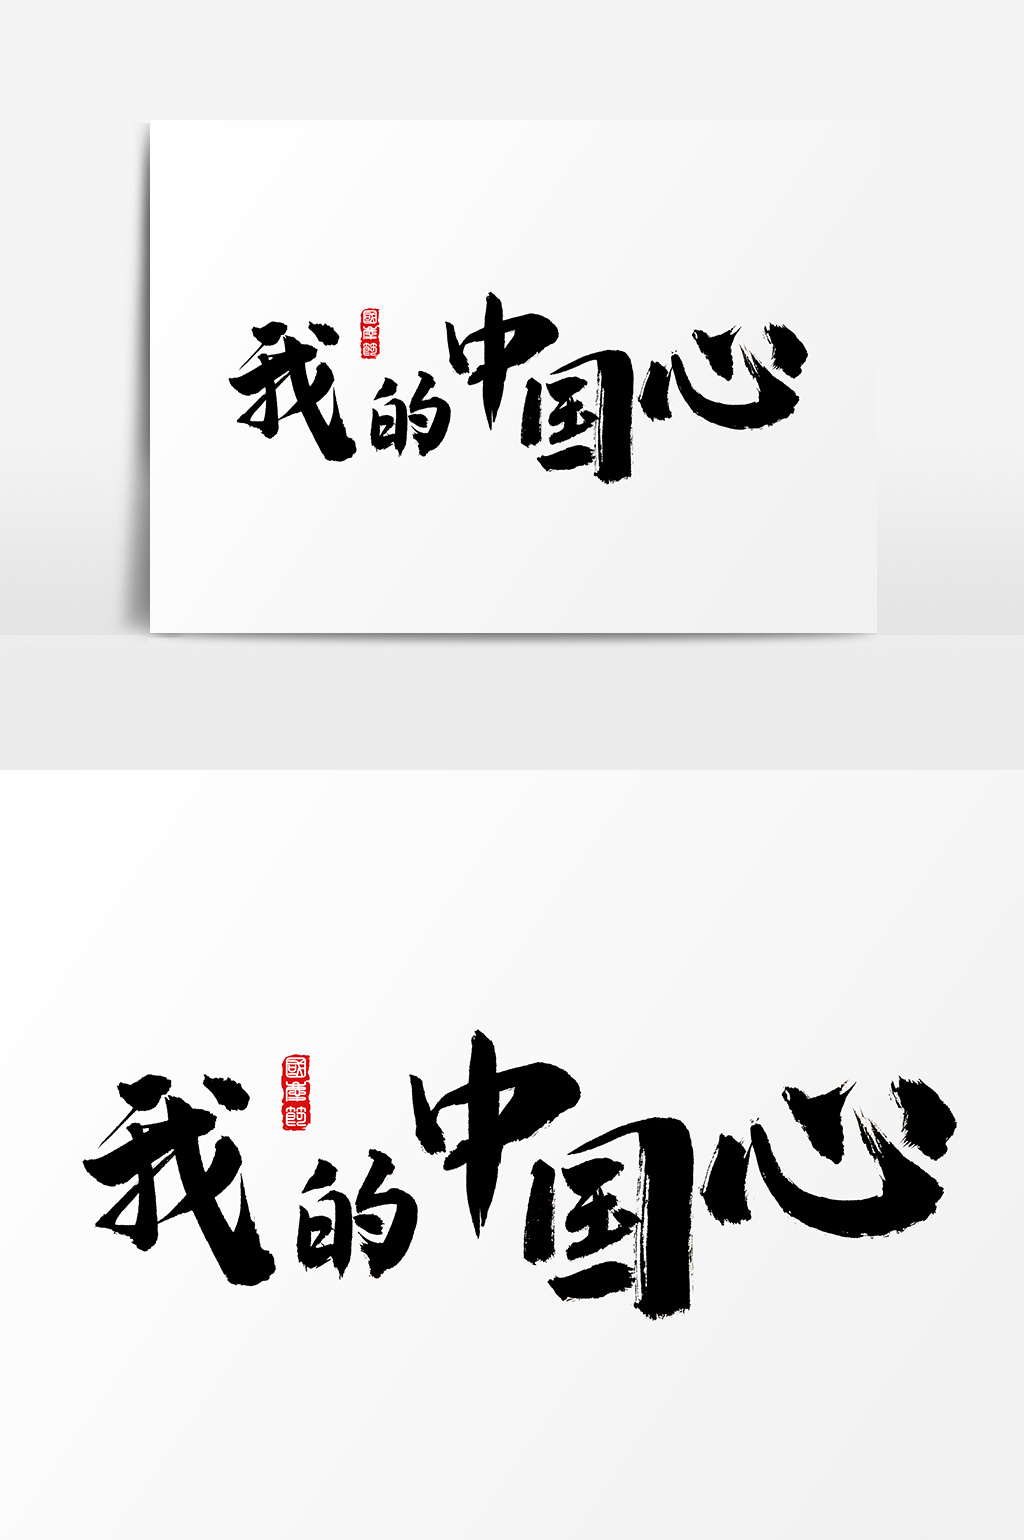 我的中国心水墨中国风书法字体素材免费下载,本次作品主题是广告设计